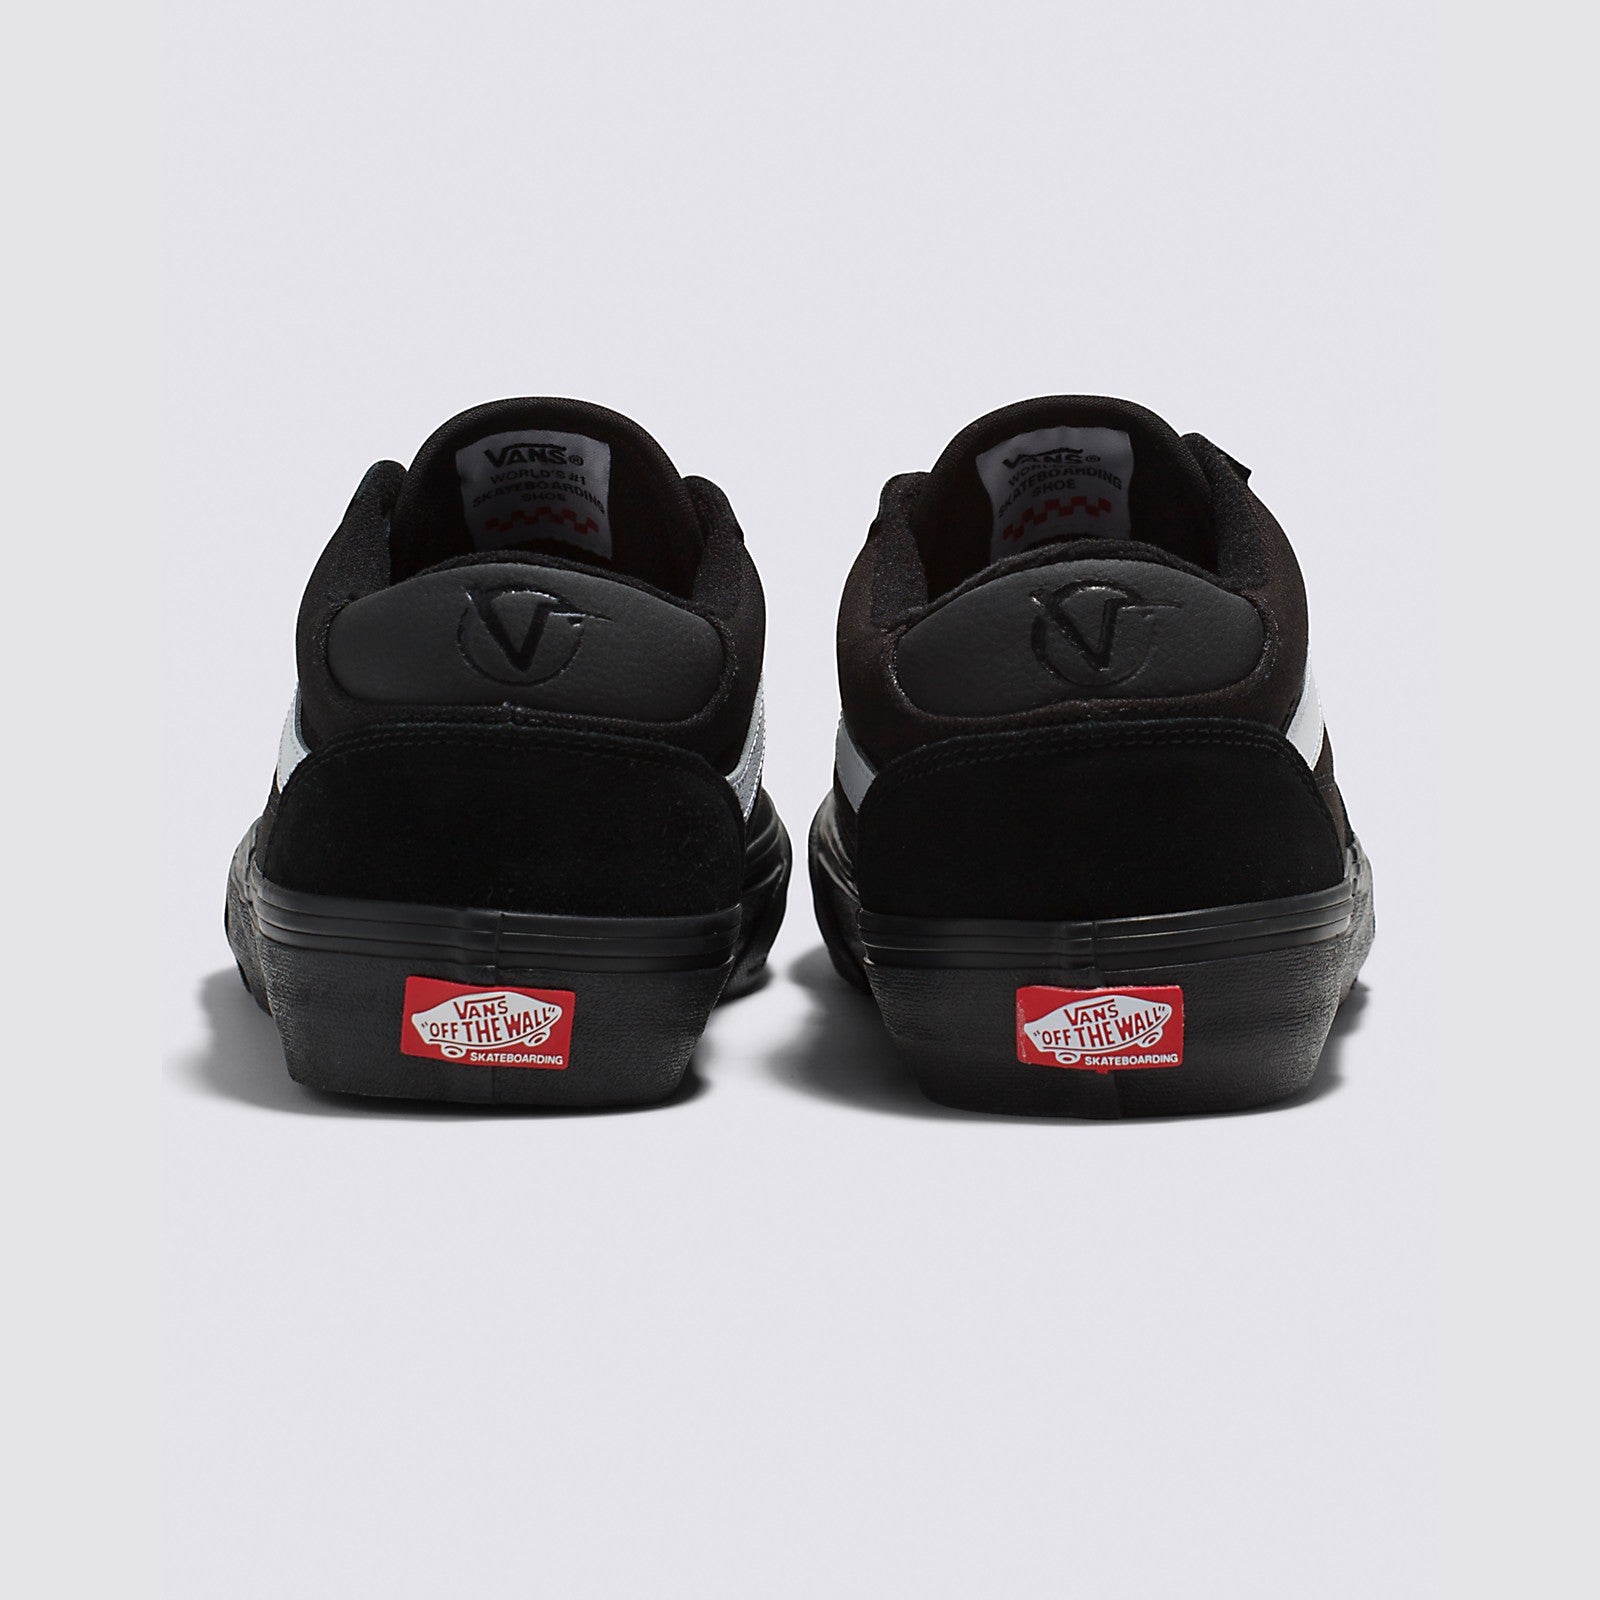 Black/Black/White Rowan Vans Skateboard Shoe Back